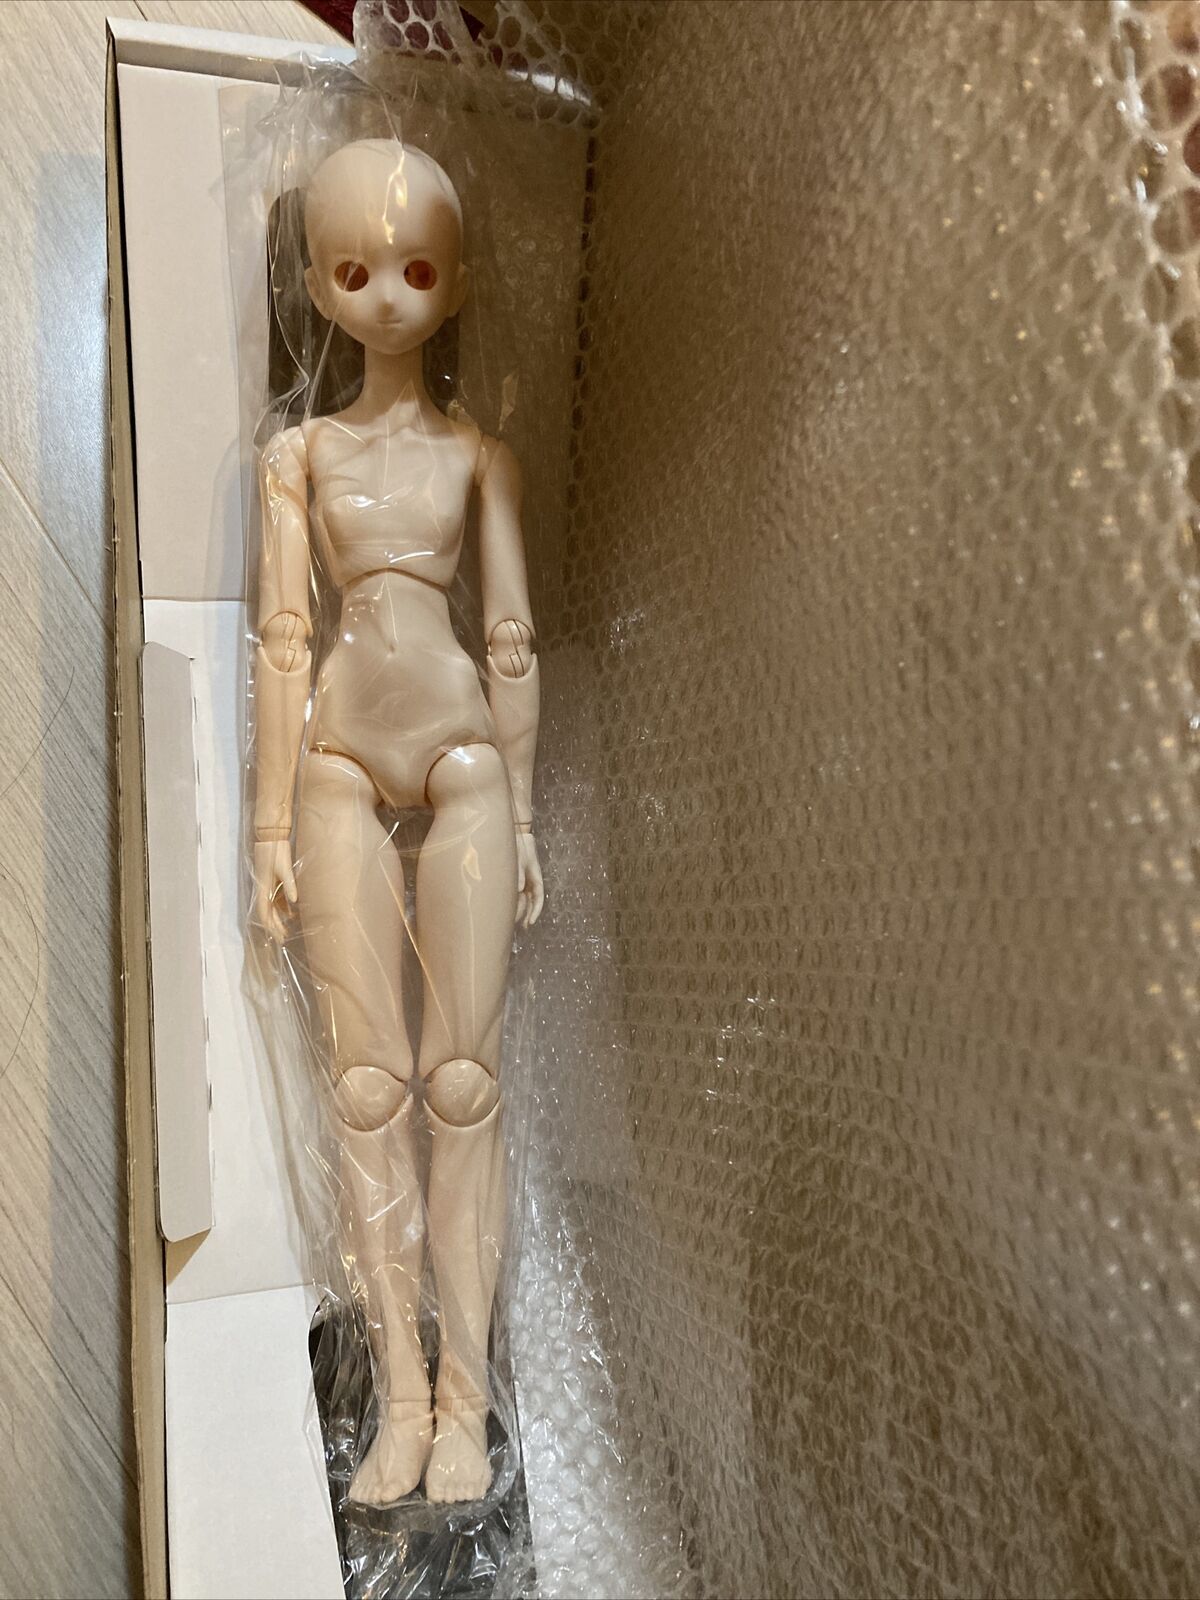 OBiTSU DOLL 48cm OBiTSU BODY Whitey soft vinyl Action Figure Body Japan New